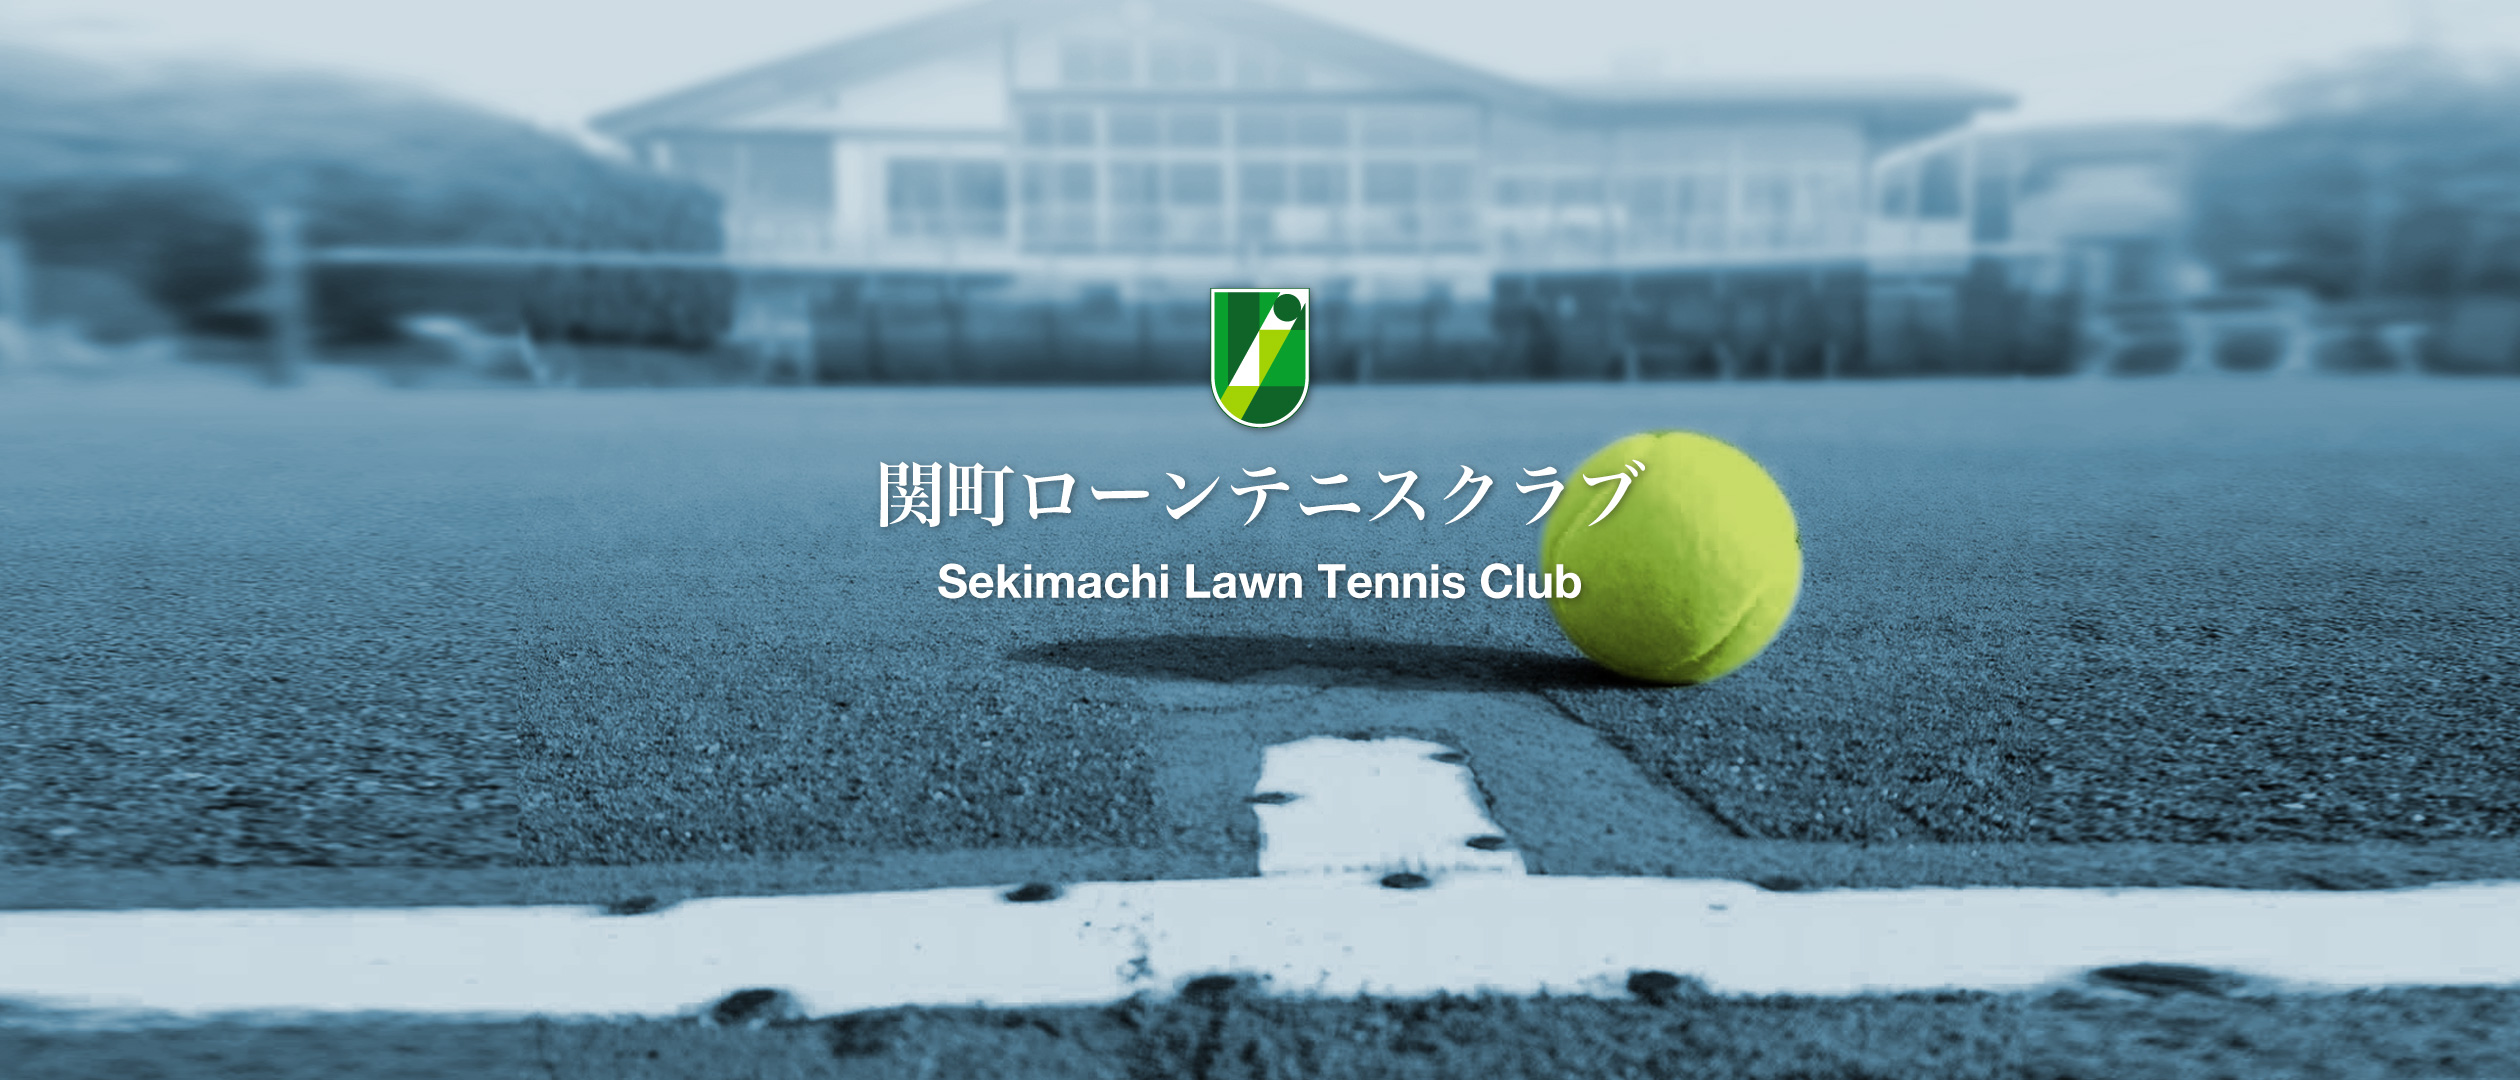 関町ローンテニスクラブの施設画像